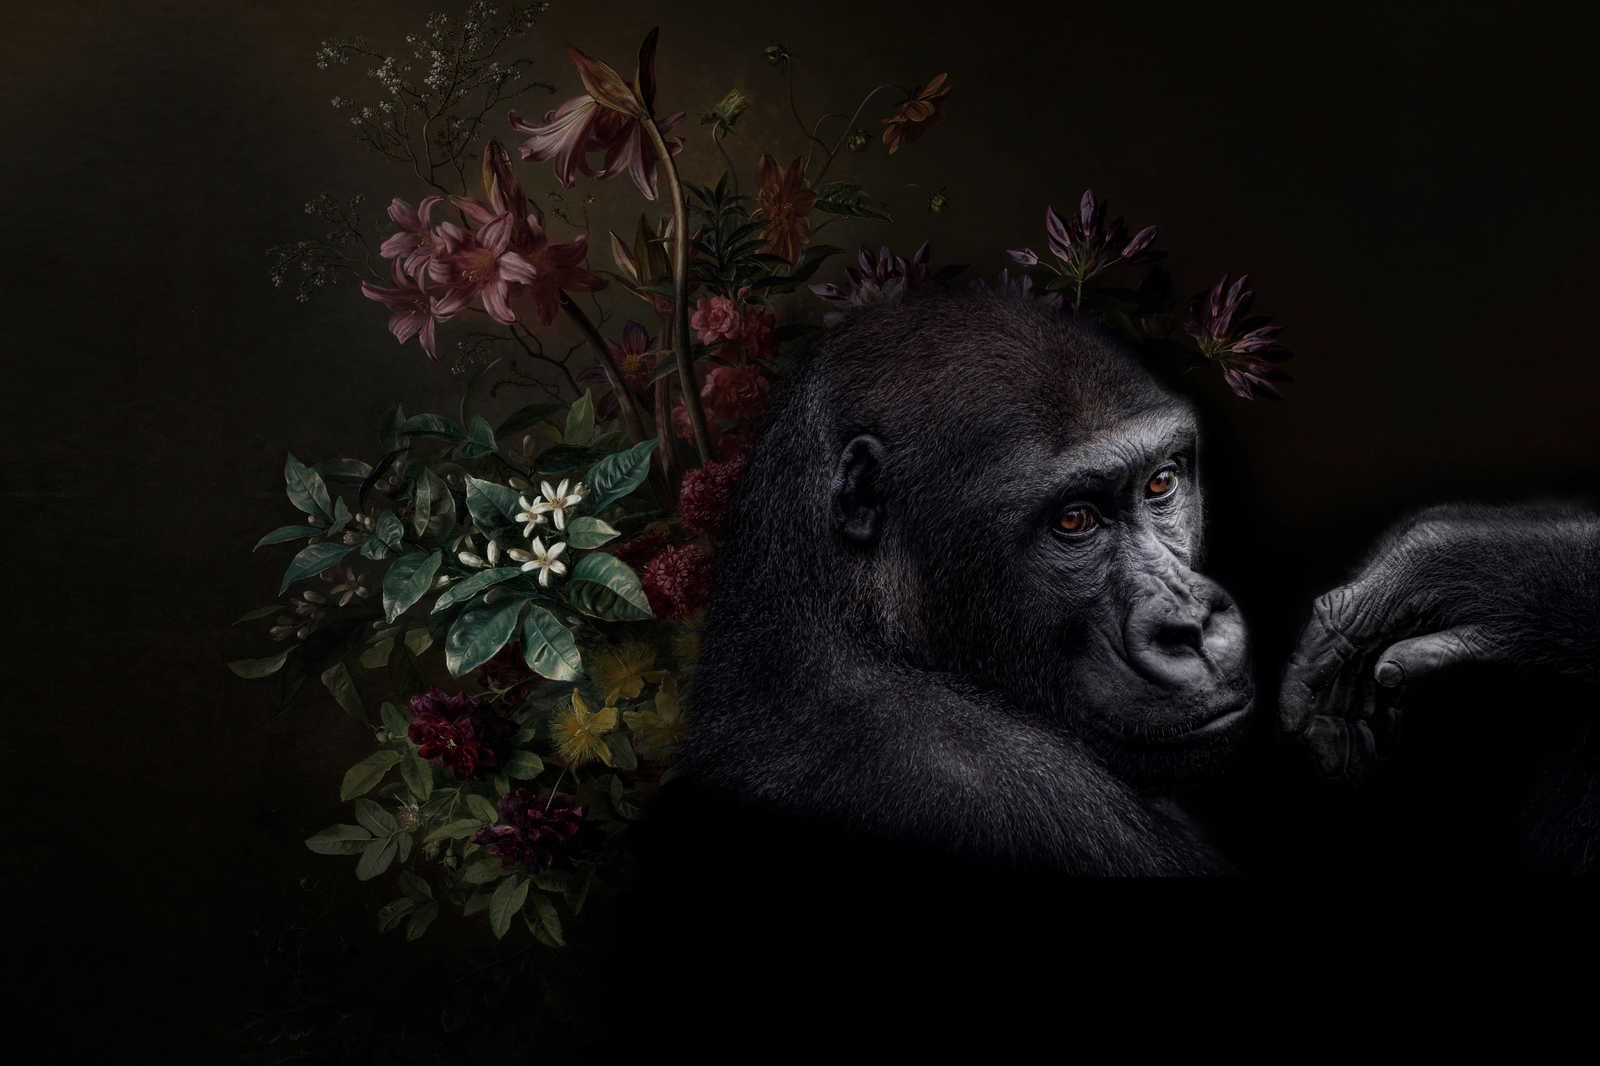             Canvas schilderij Gorilla Portret met bloemen - 0,90 m x 0,60 m
        